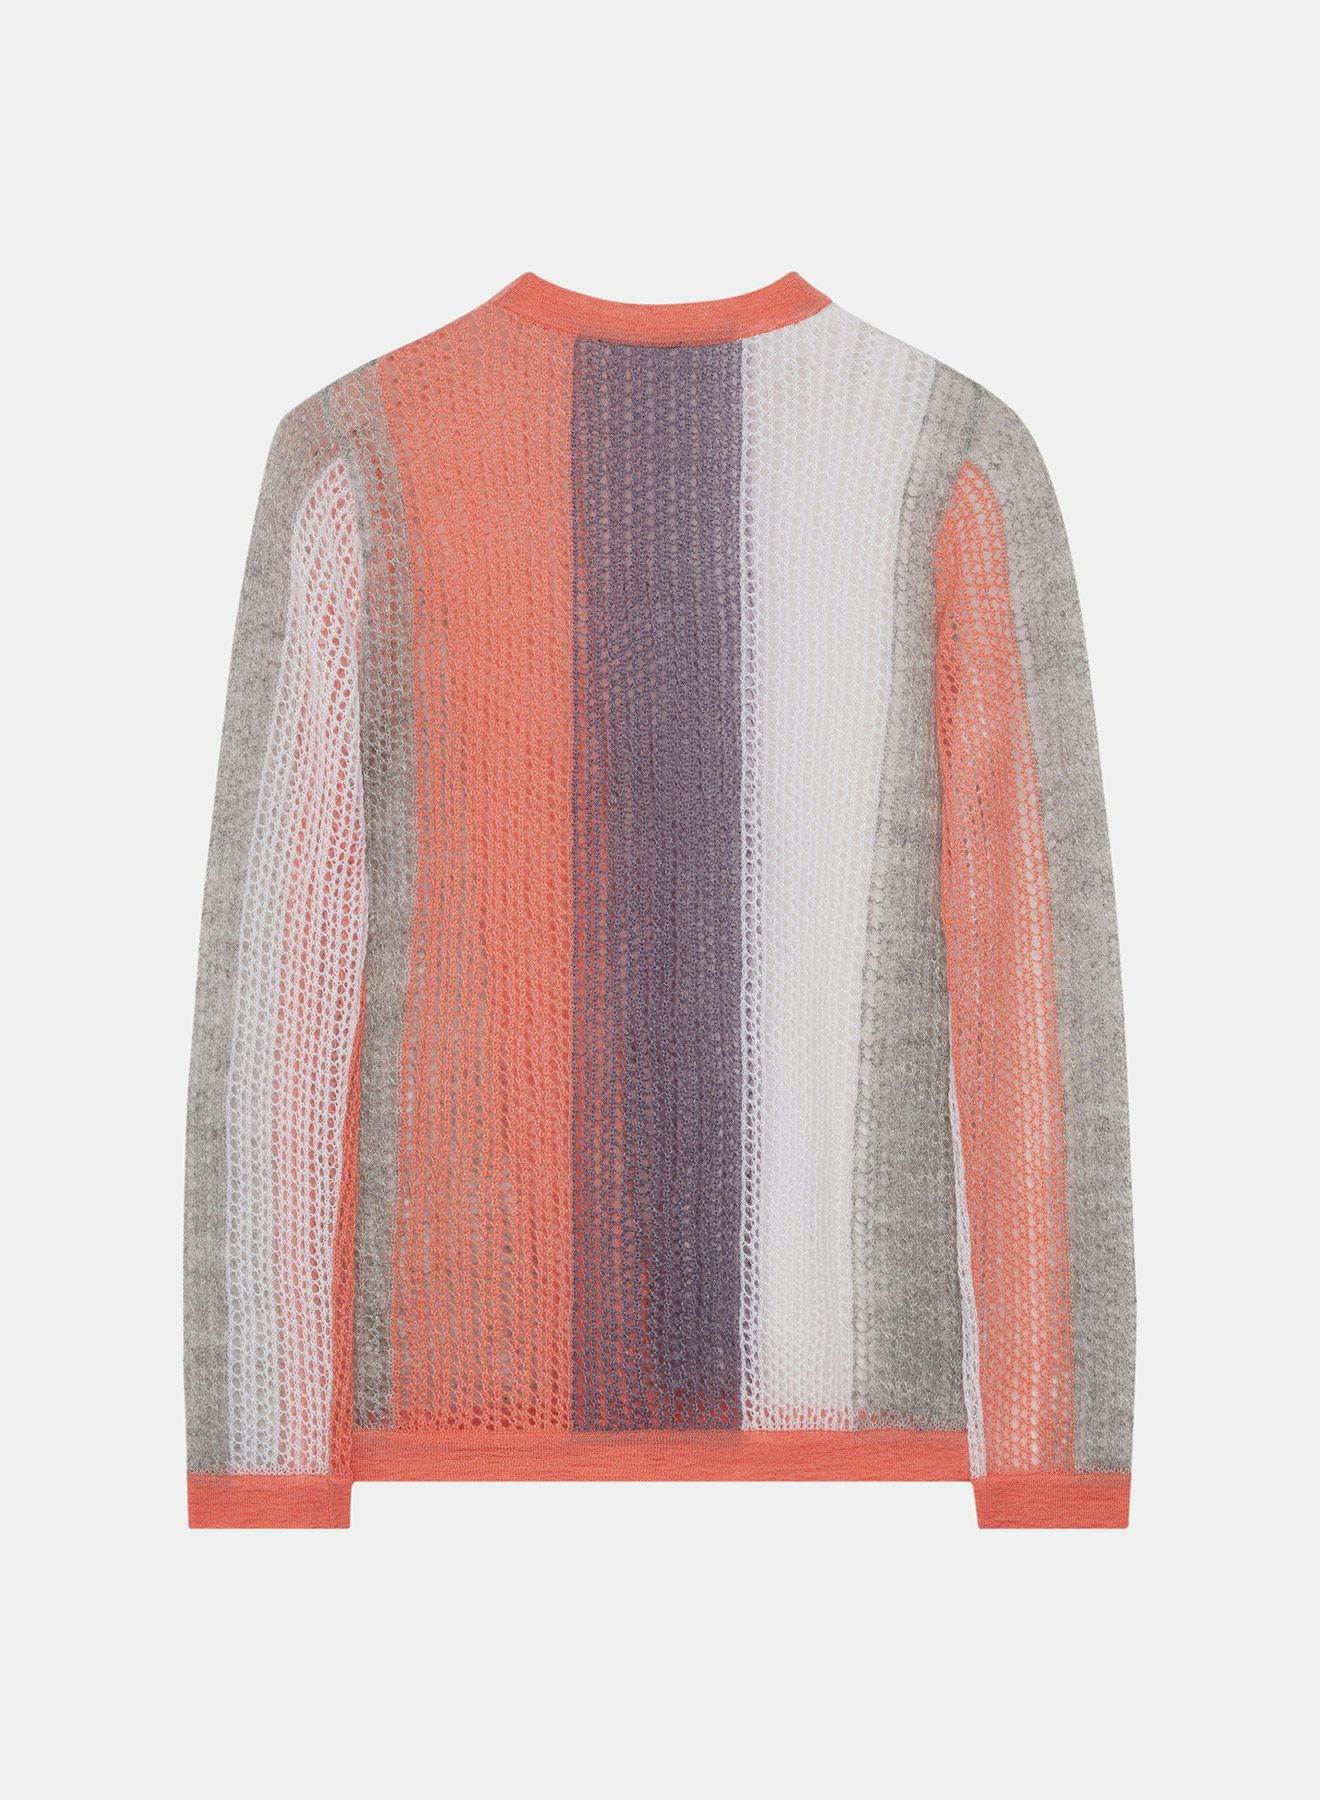 Suéter de redecilla mohair melocotón, gris y lila - Nina Ricci